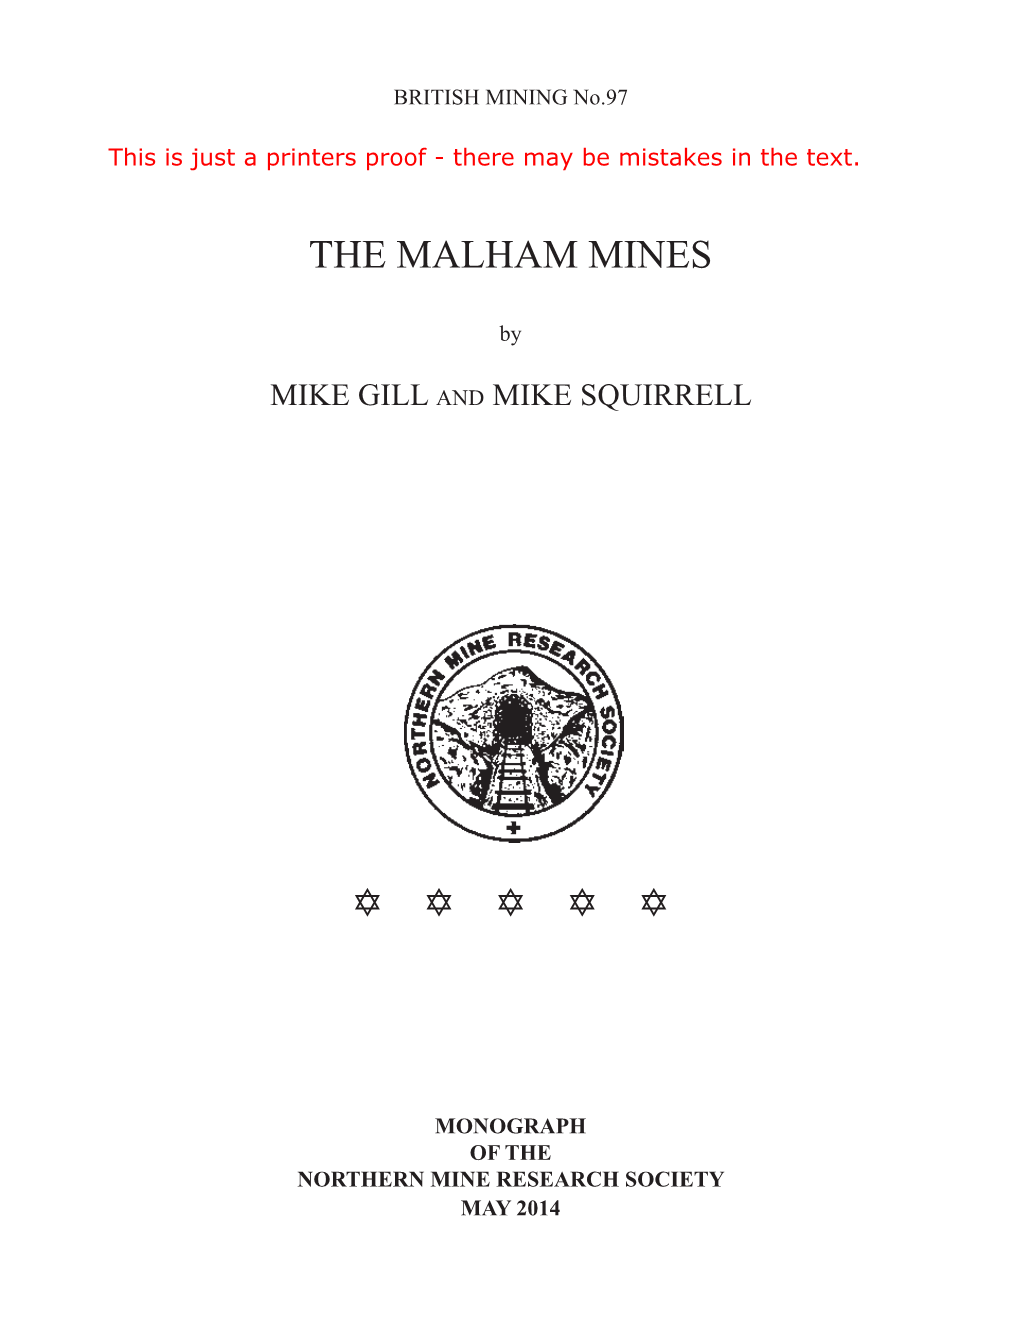 The Malham Mines